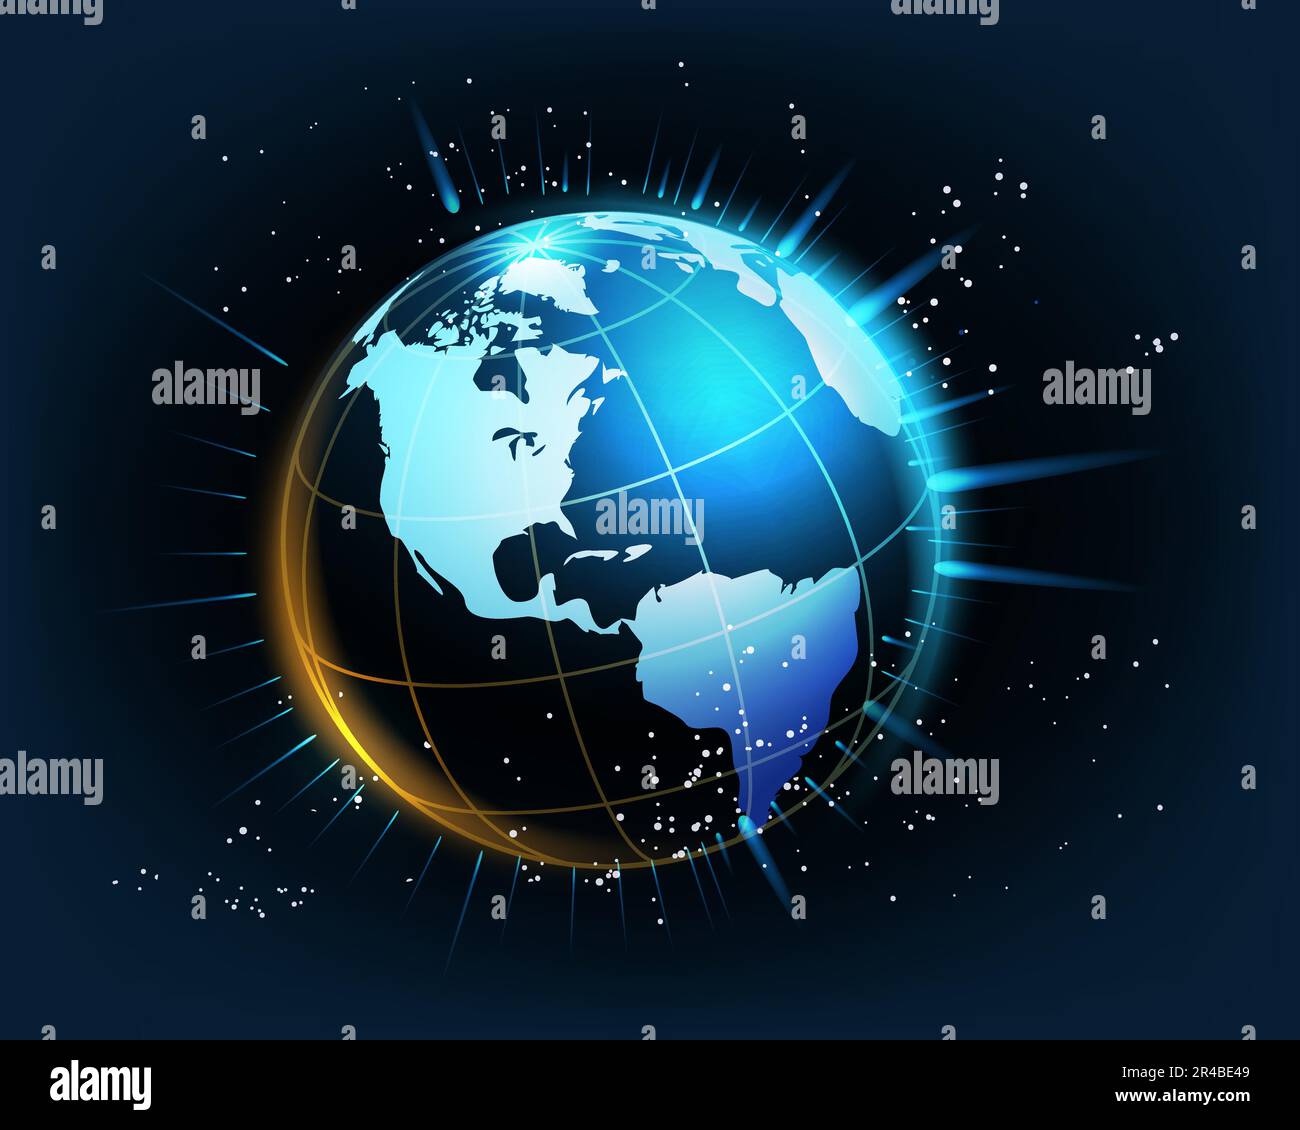 Planet Earth mit leuchtenden Strahlen Wissenschafts- und Technologiekonzept auf schwarzblauem Hintergrund. Vektordarstellung Stock Vektor